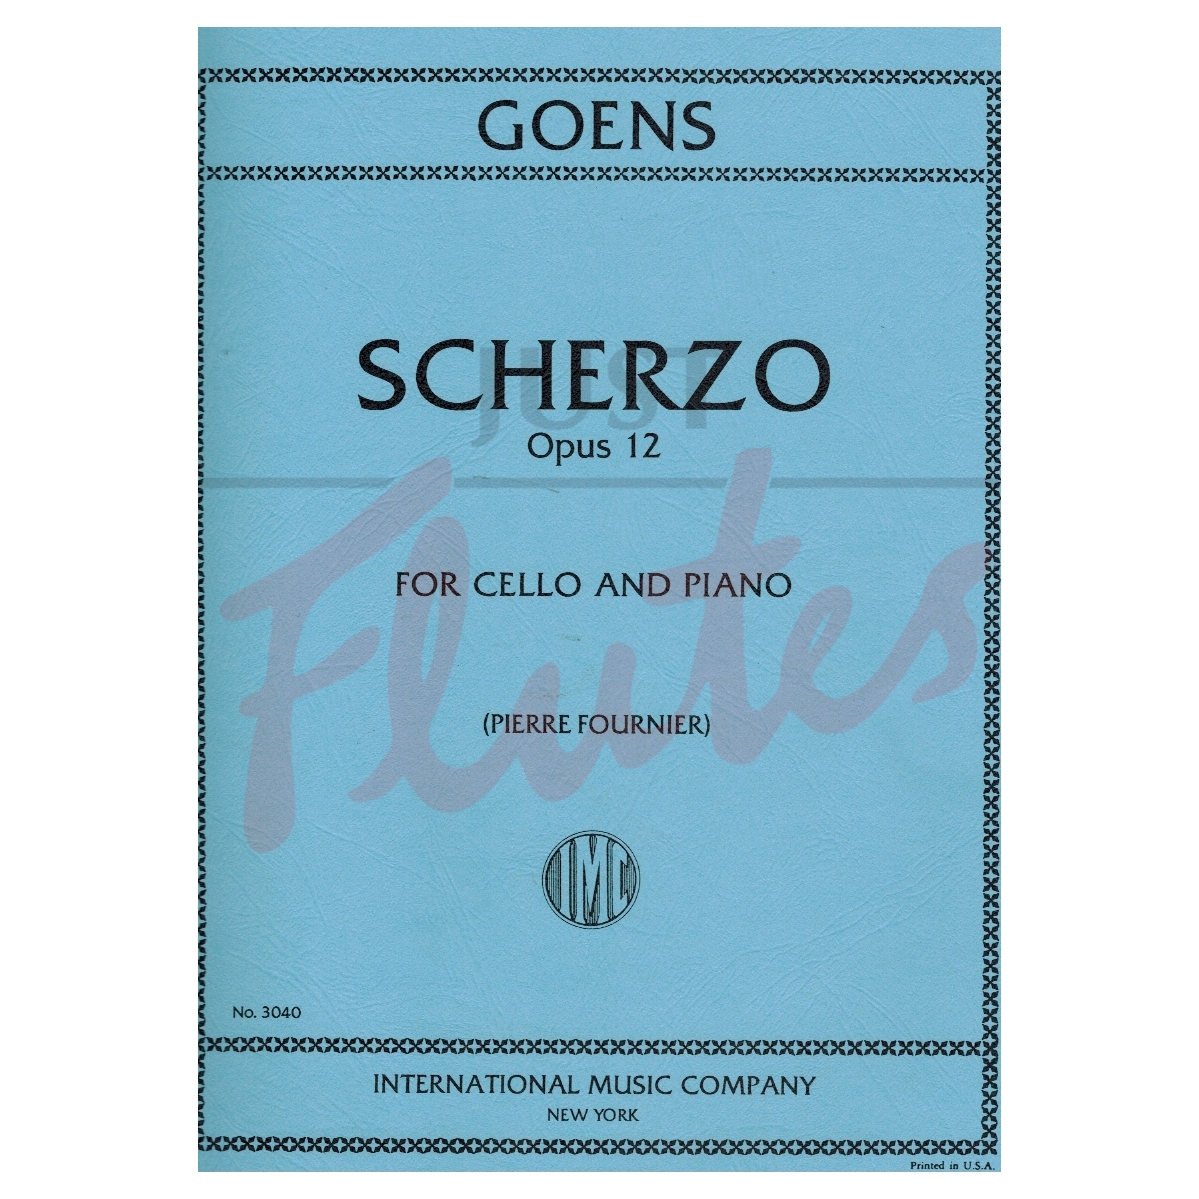 Scherzo for Cello and Piano